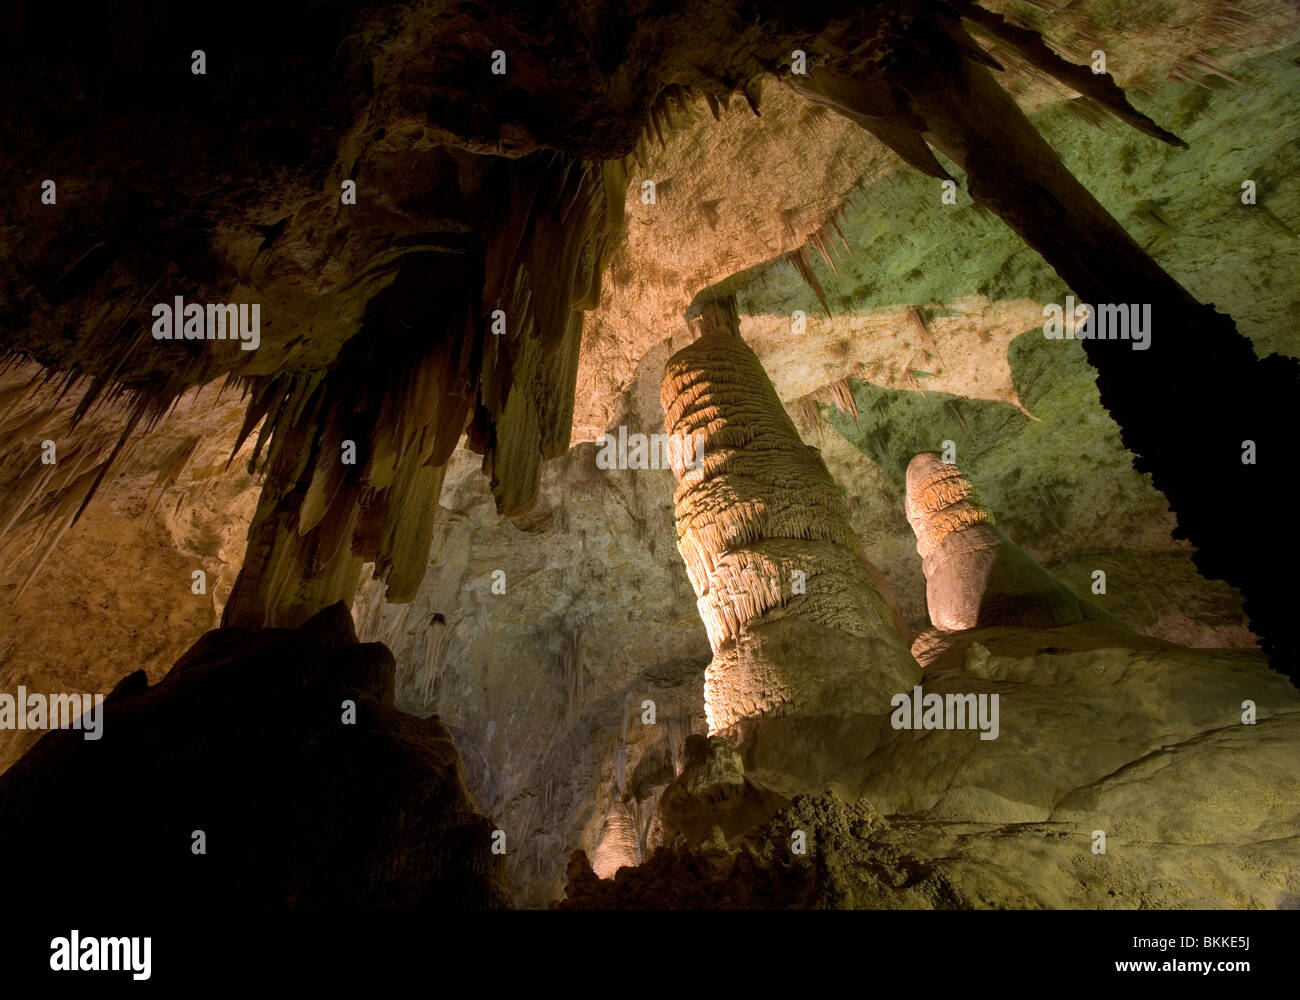 À l'intérieur du hall de géants à Carlsbad Caverns. Les géants sont de plus en plus stelagmites massive en haut du sol. Banque D'Images